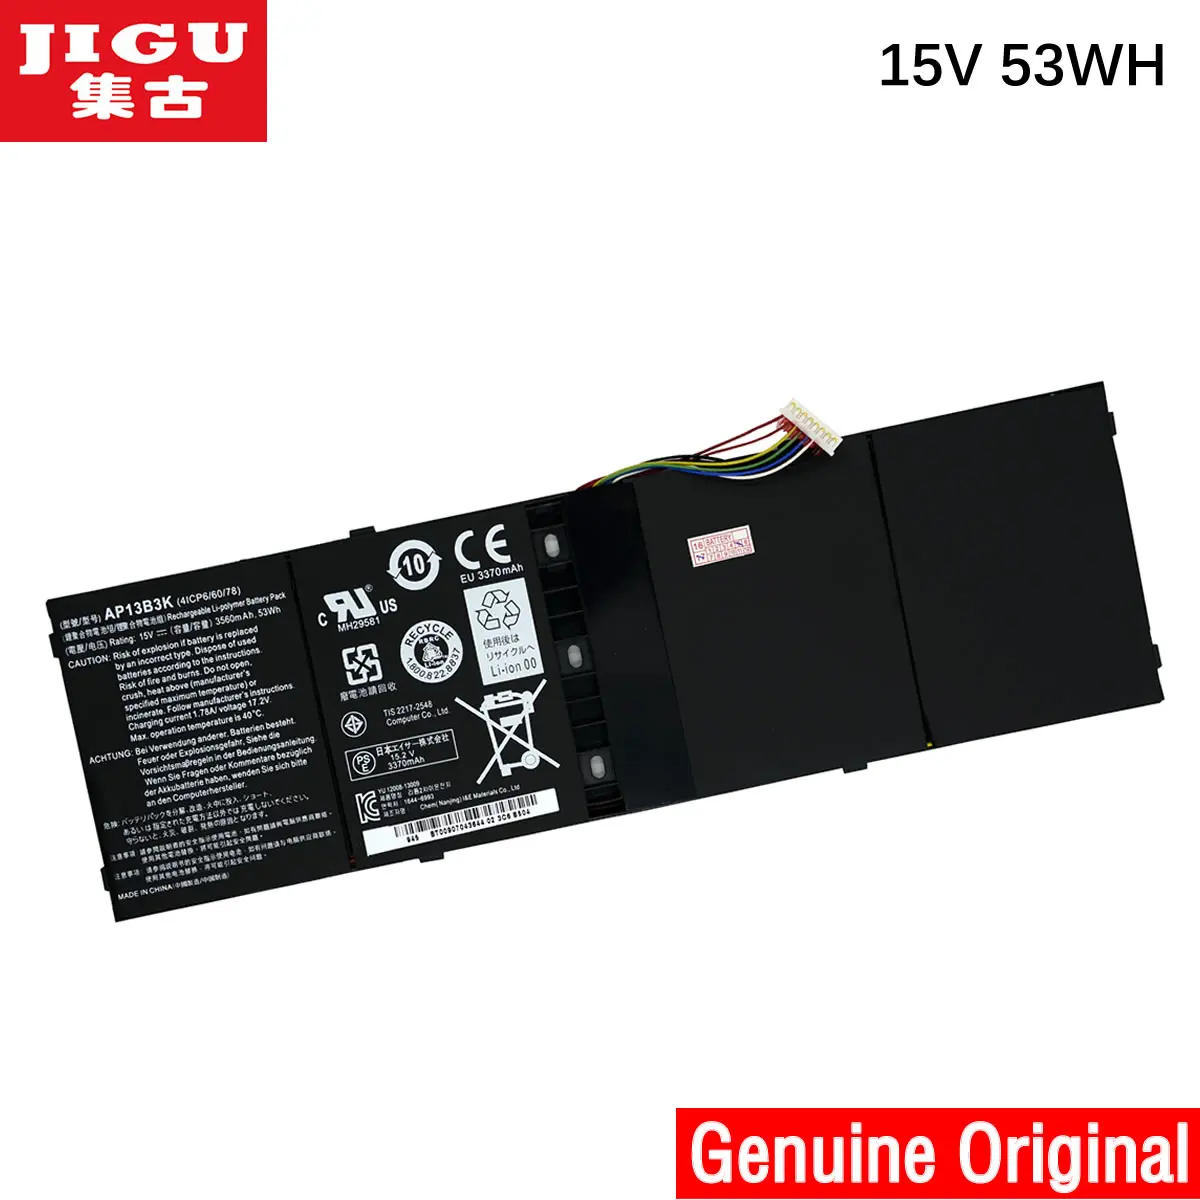 

JIGU Original Battery For Acer Aspire V5-552G V5-573P M5-583 V5-552P V5-573 V5-473 R7-571 R7-571G V5-472 V5-572 V7-482 AP13B3K